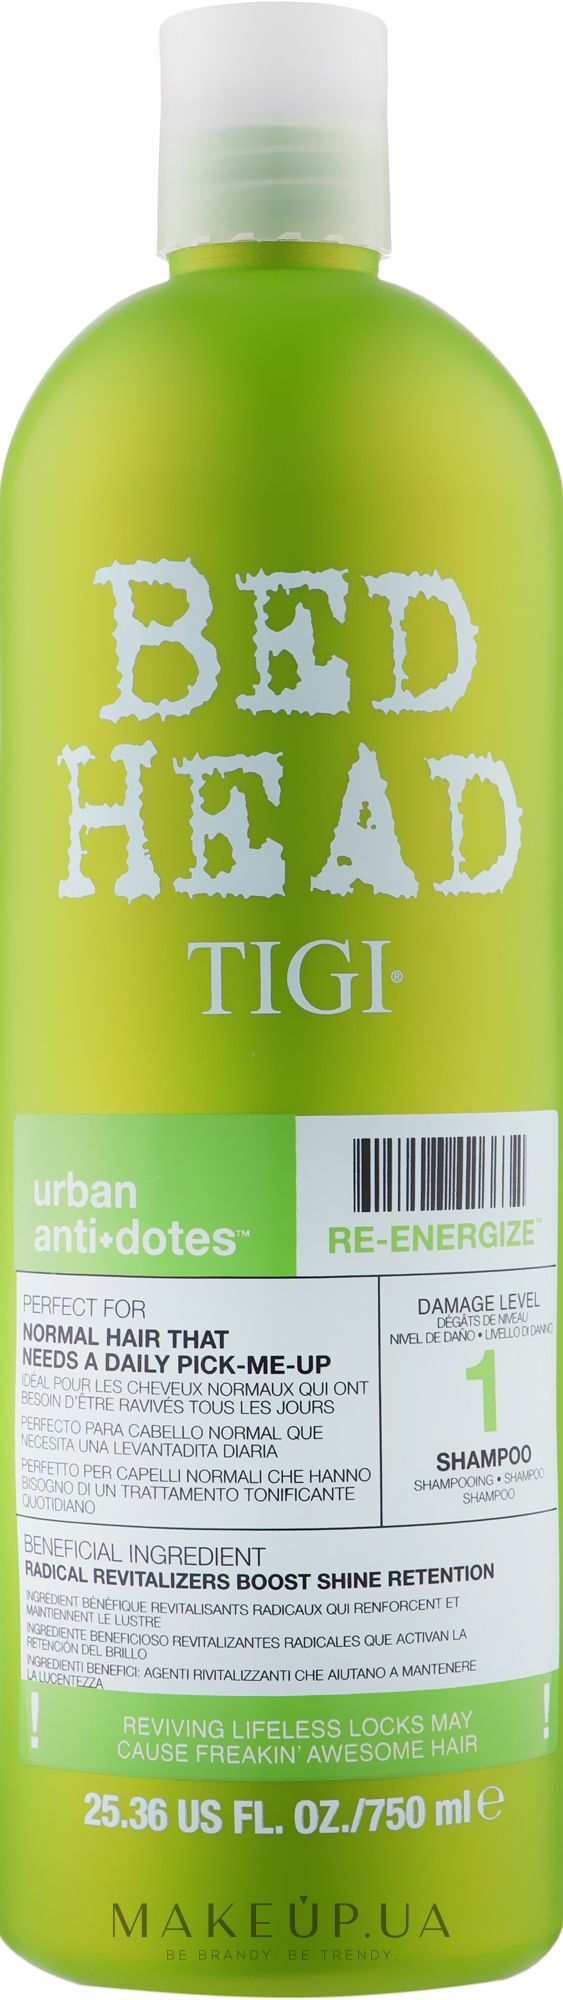 Зміцнюючий шампунь для нормального волосся - Tigi Bed Head Urban Antidotes Re-energize Shampoo — фото 750ml